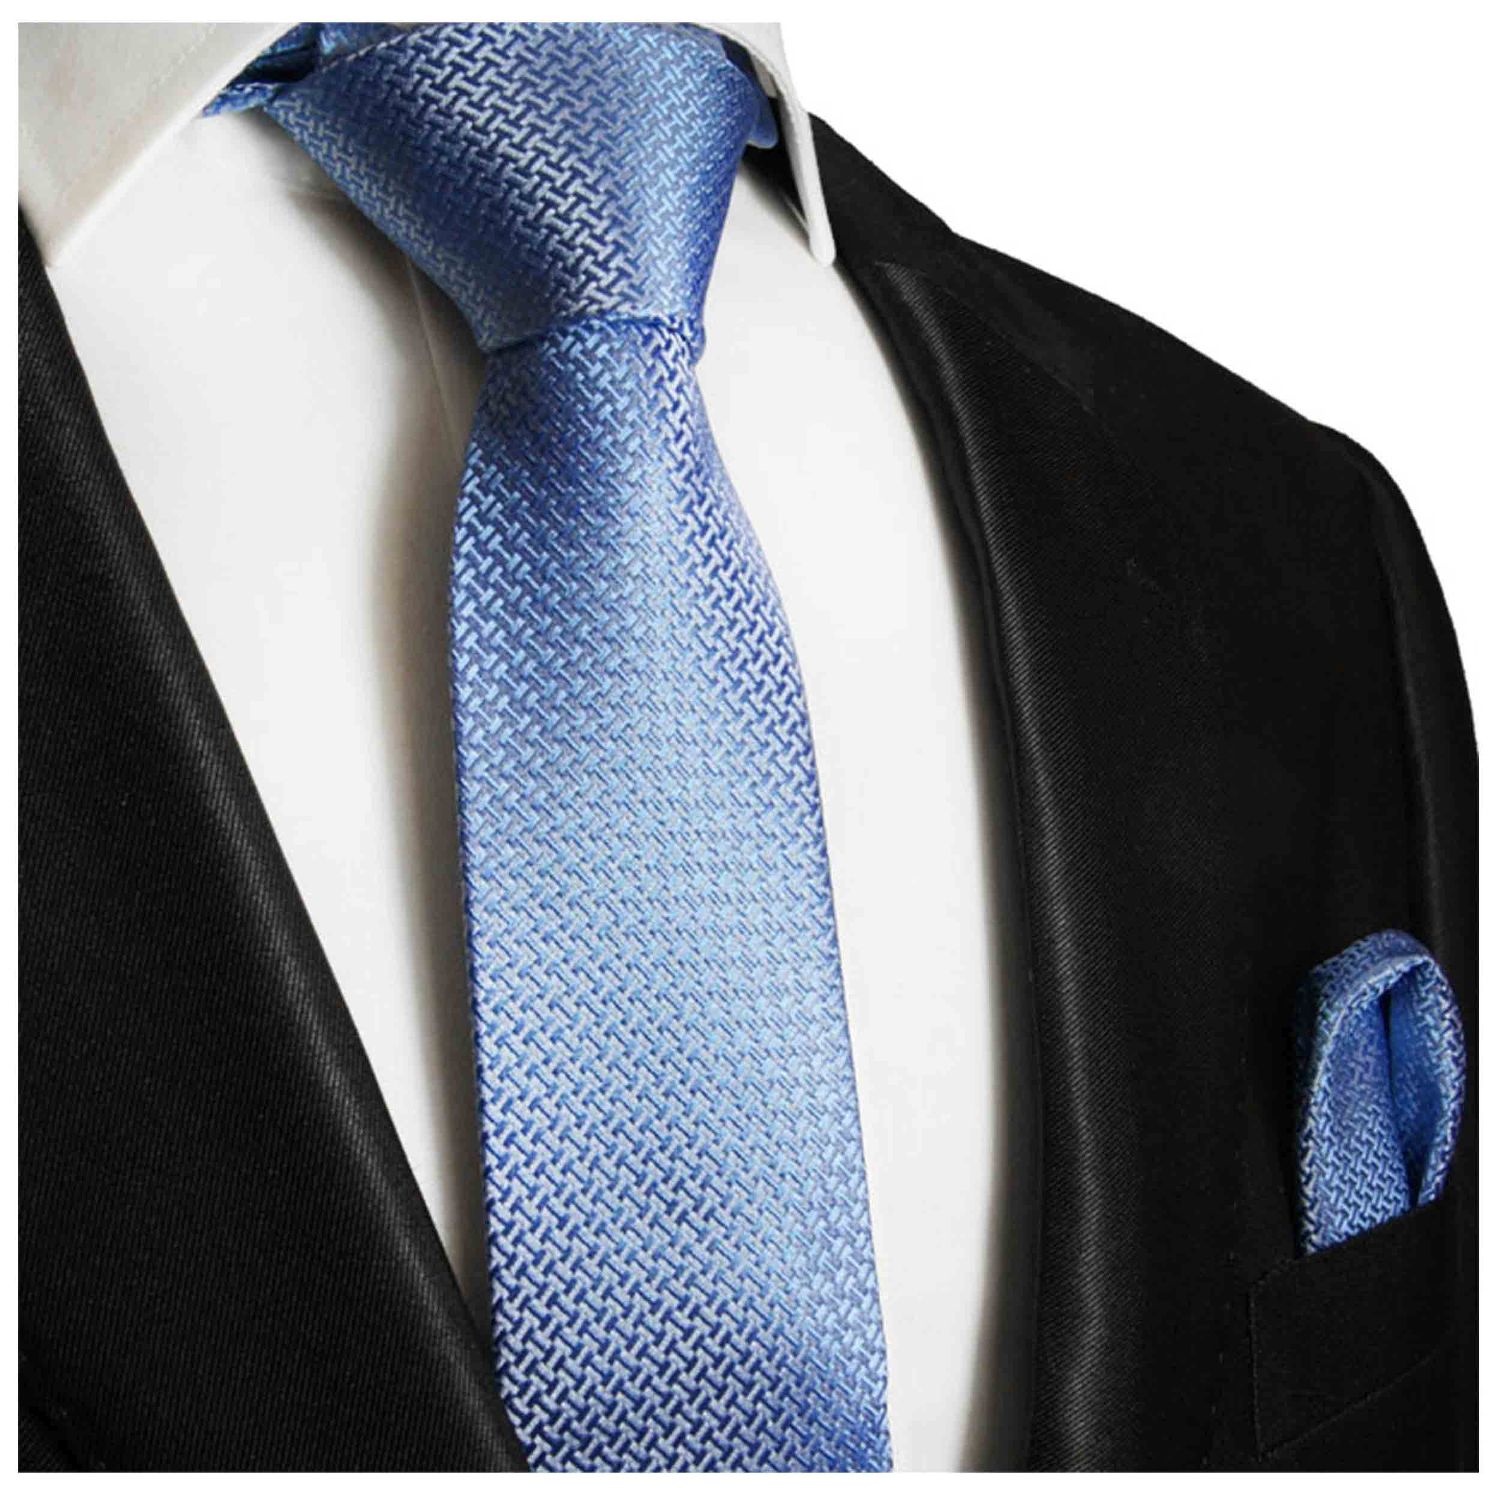 Krawatte schmal blau Seide | Malone - Sale Shop -50% Paul